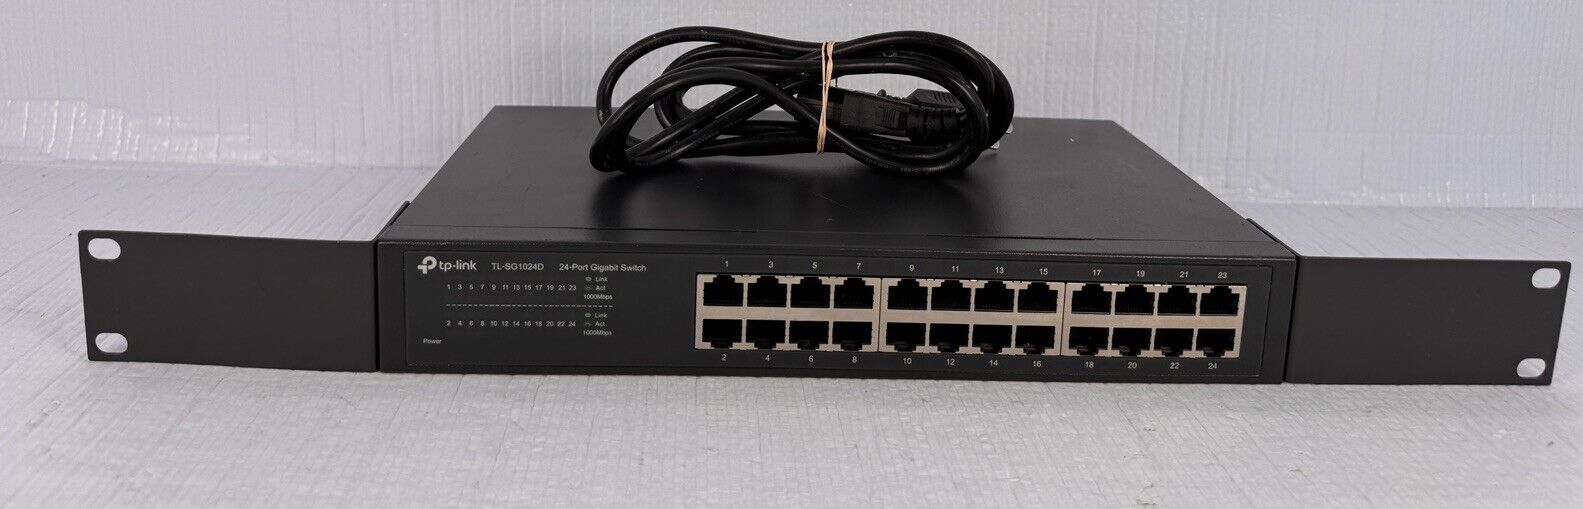 TP-Link 24-Port Gigabit Ethernet Unmanaged Switch Desktop/Rackmount TL-SG1024D